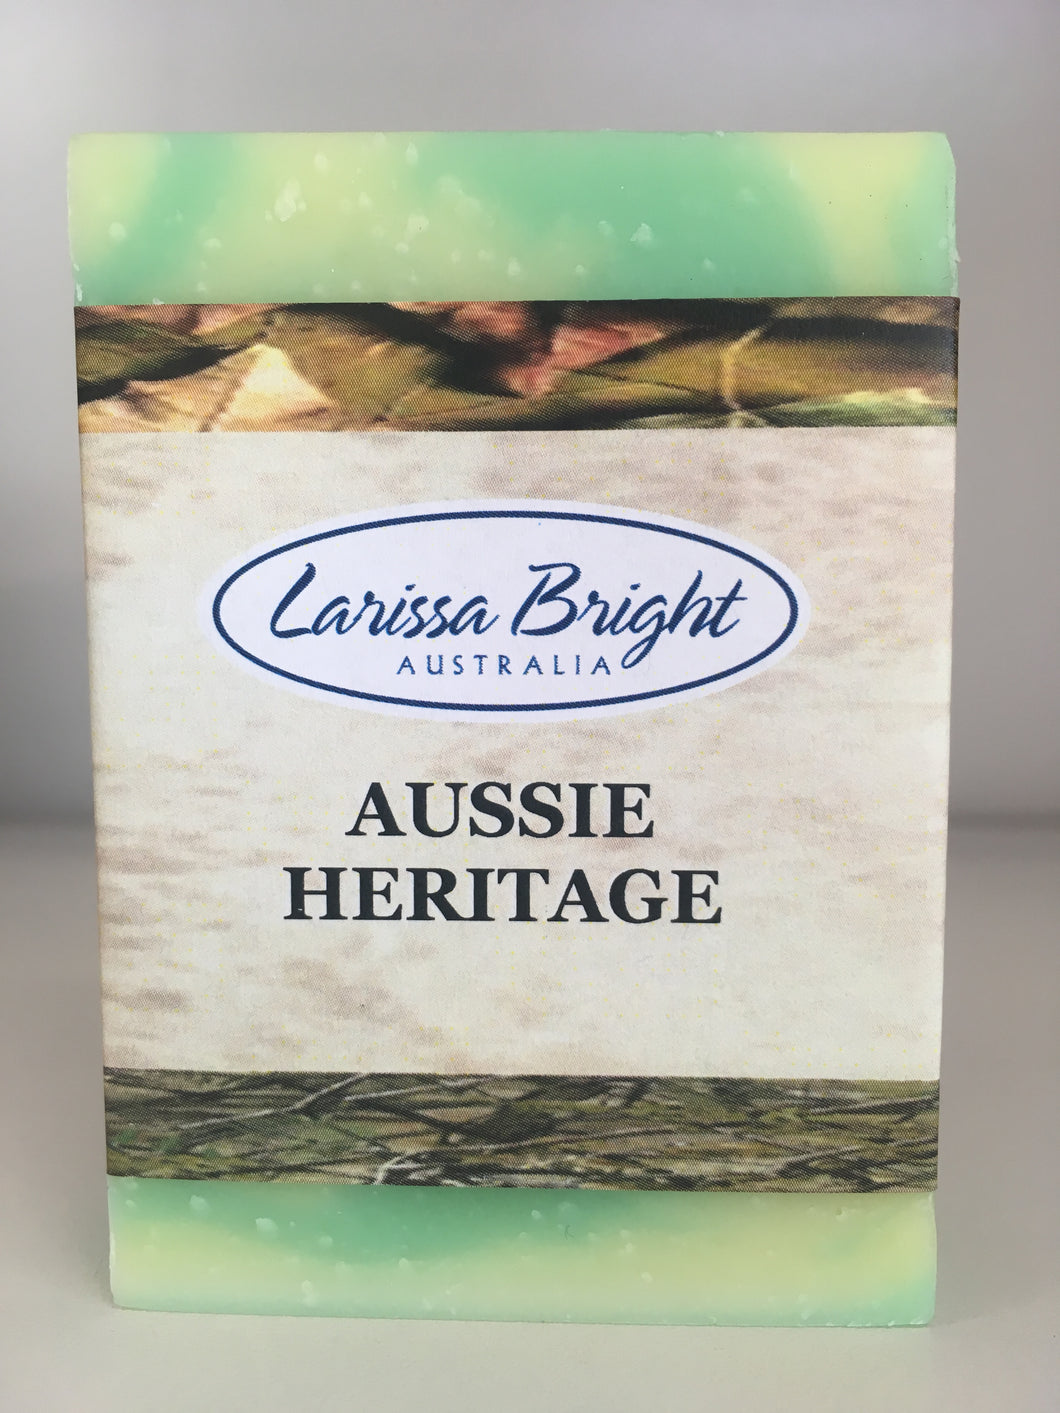 Aussie Heritage - Larissa Bright Australia